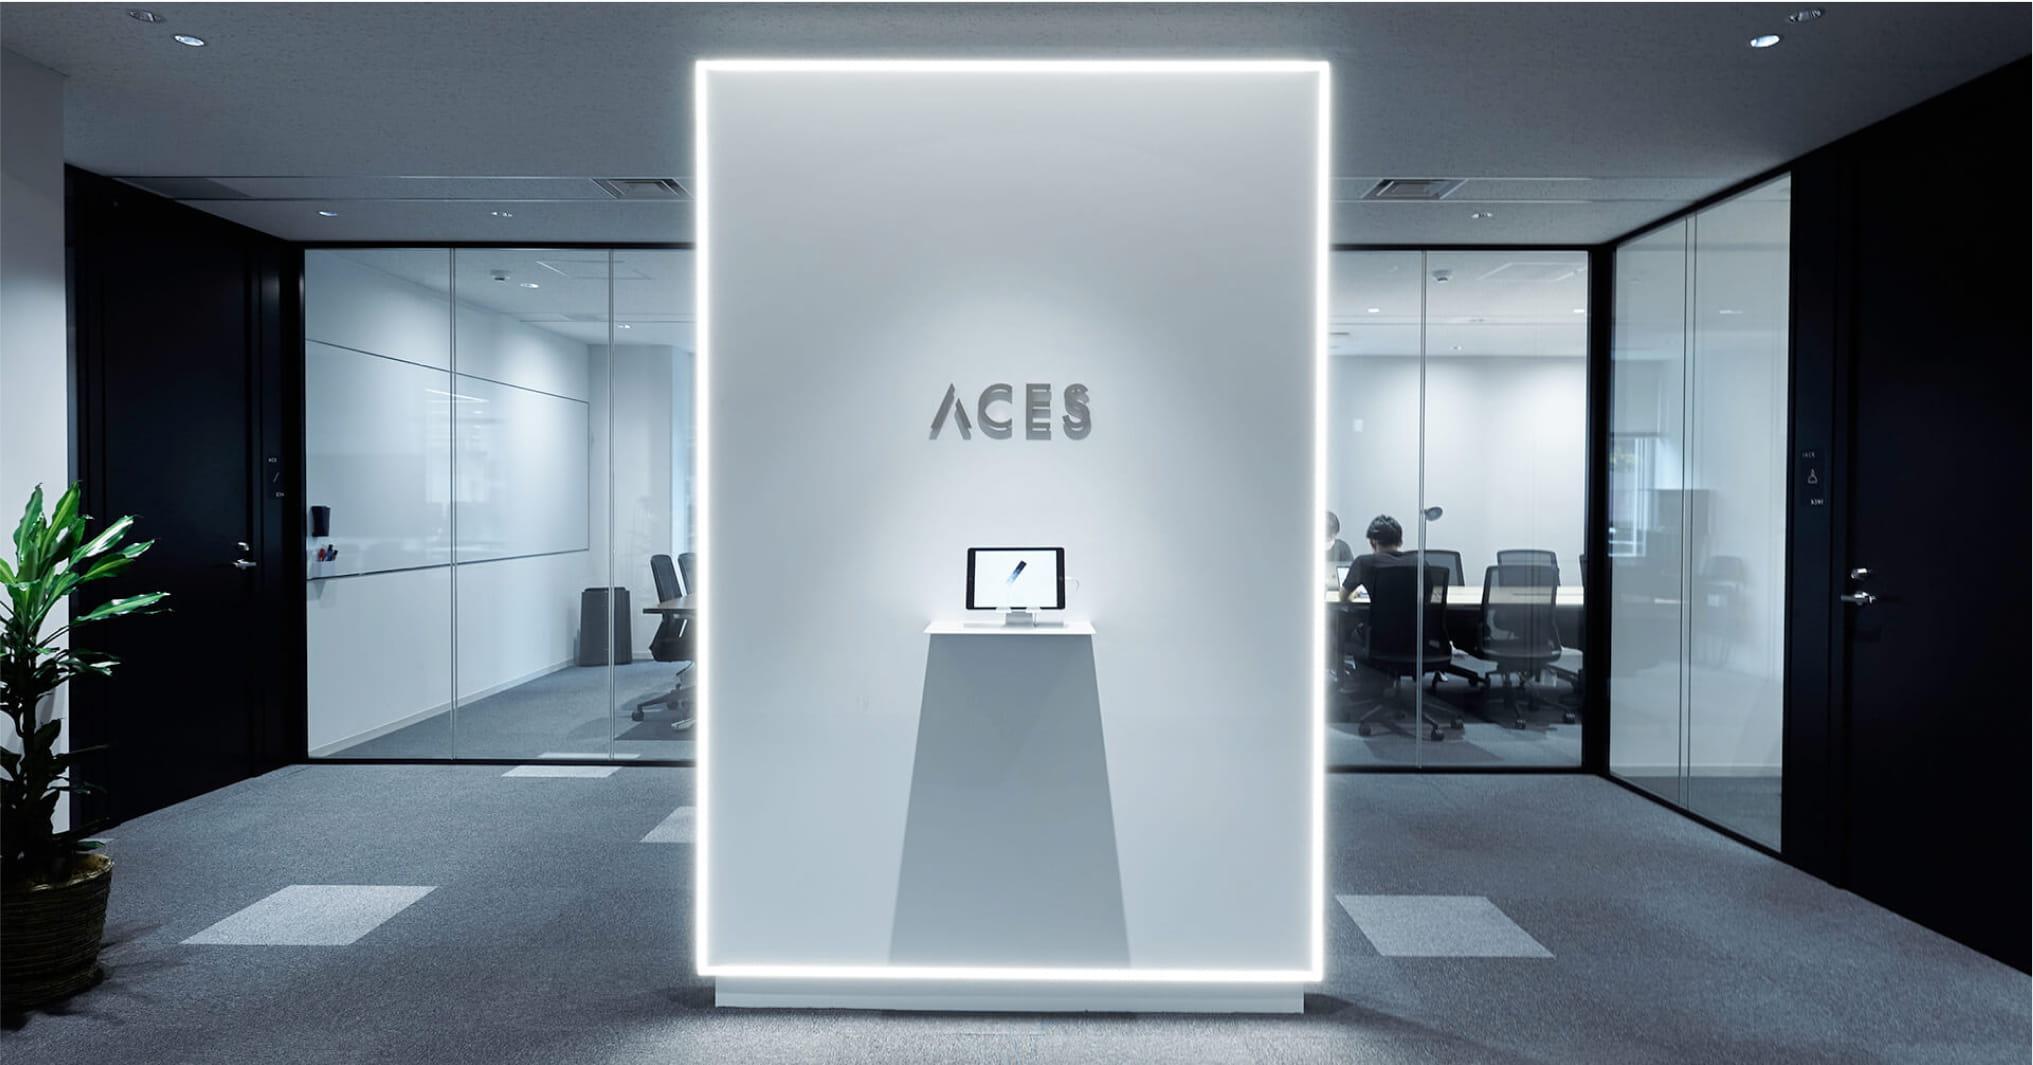 写真：近未来的な雰囲気のオフィスの入り口。ACESと書かれた看板が中央に見える。